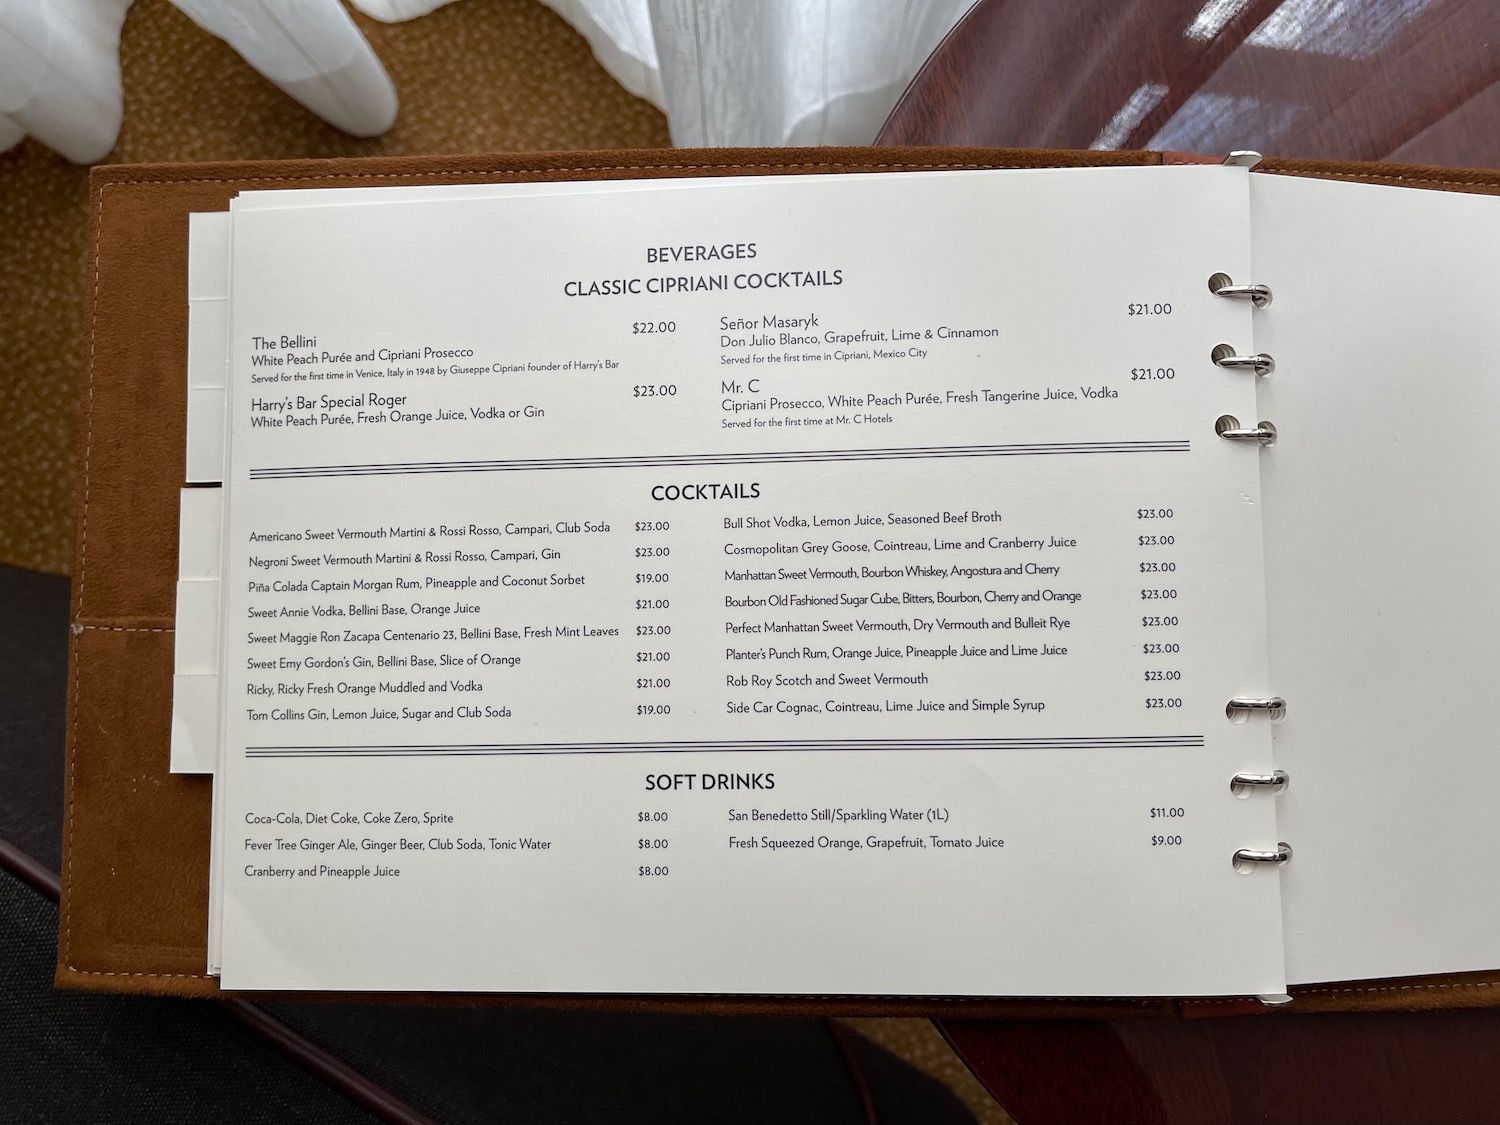 a menu in a book